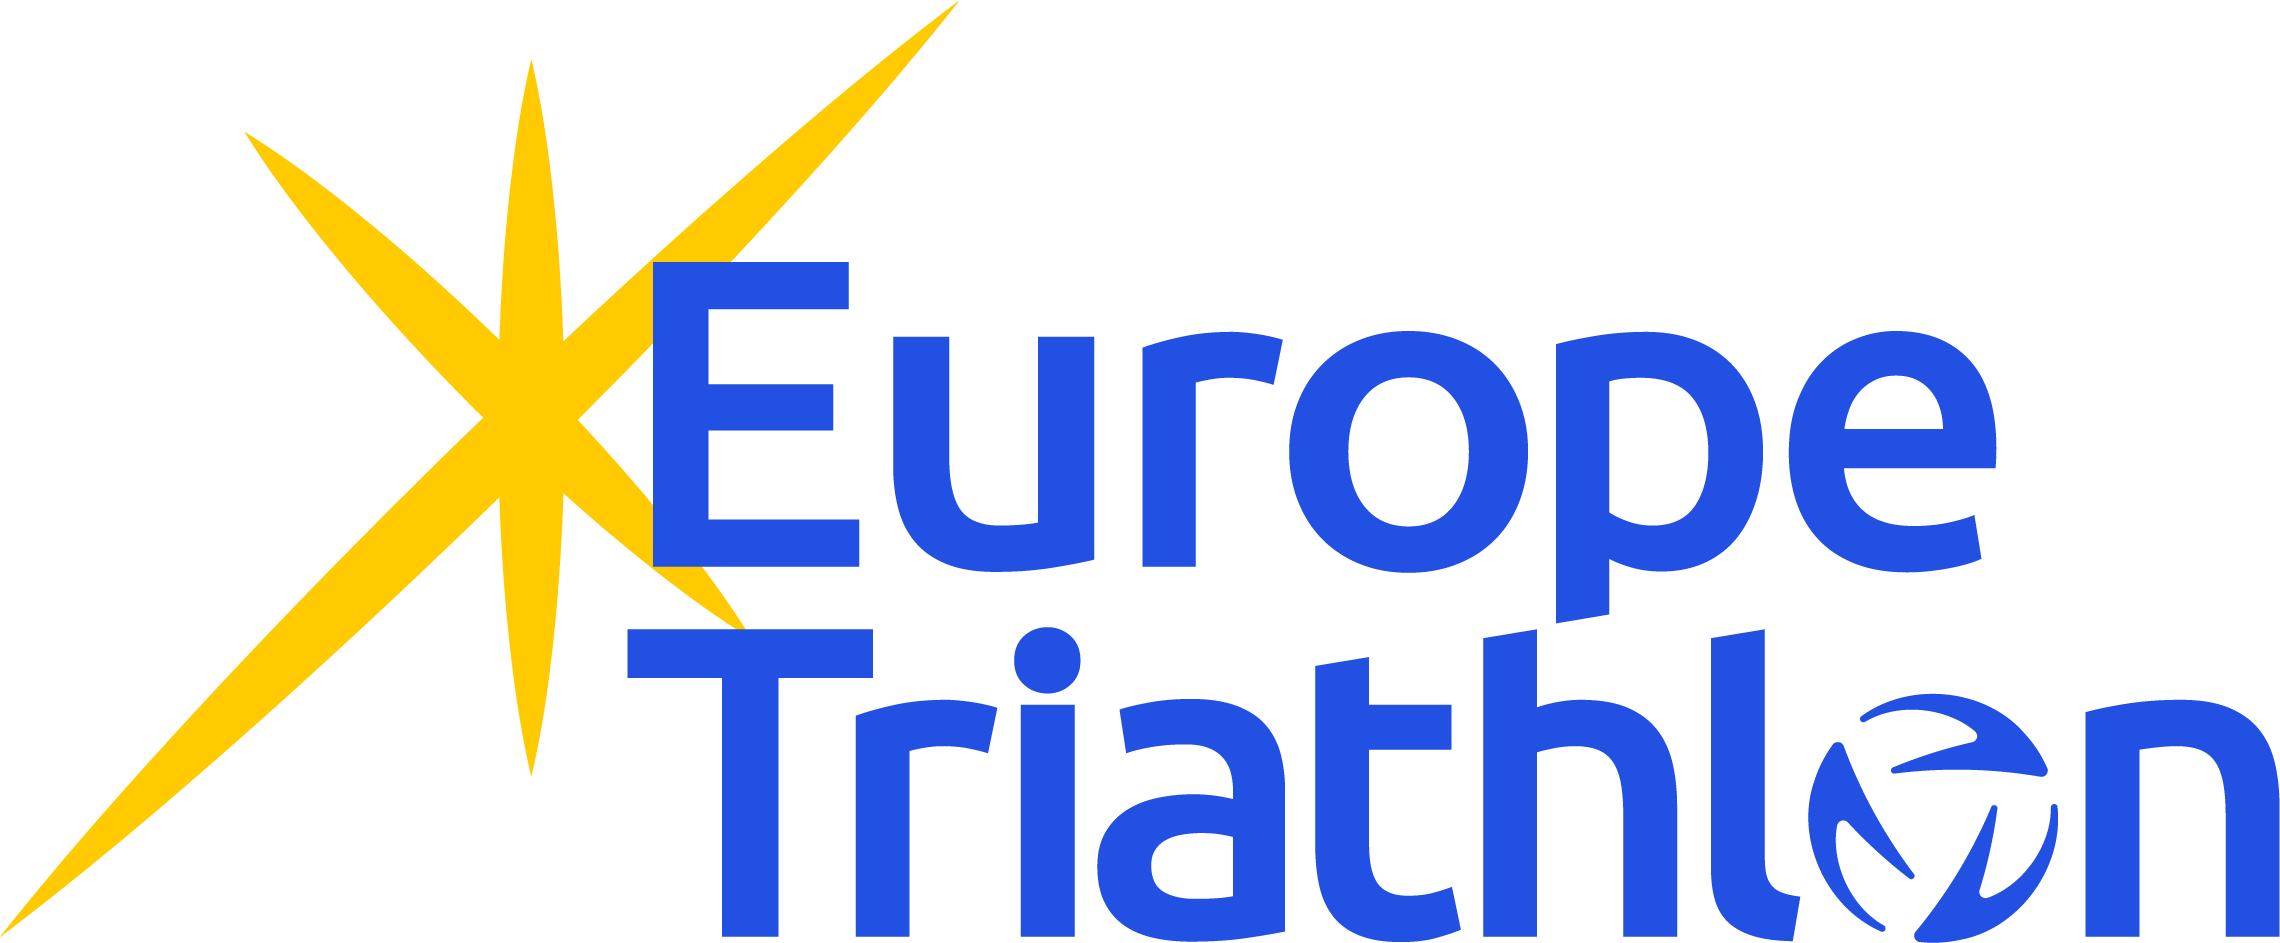 Europe Triathlon al voto il 6 marzo